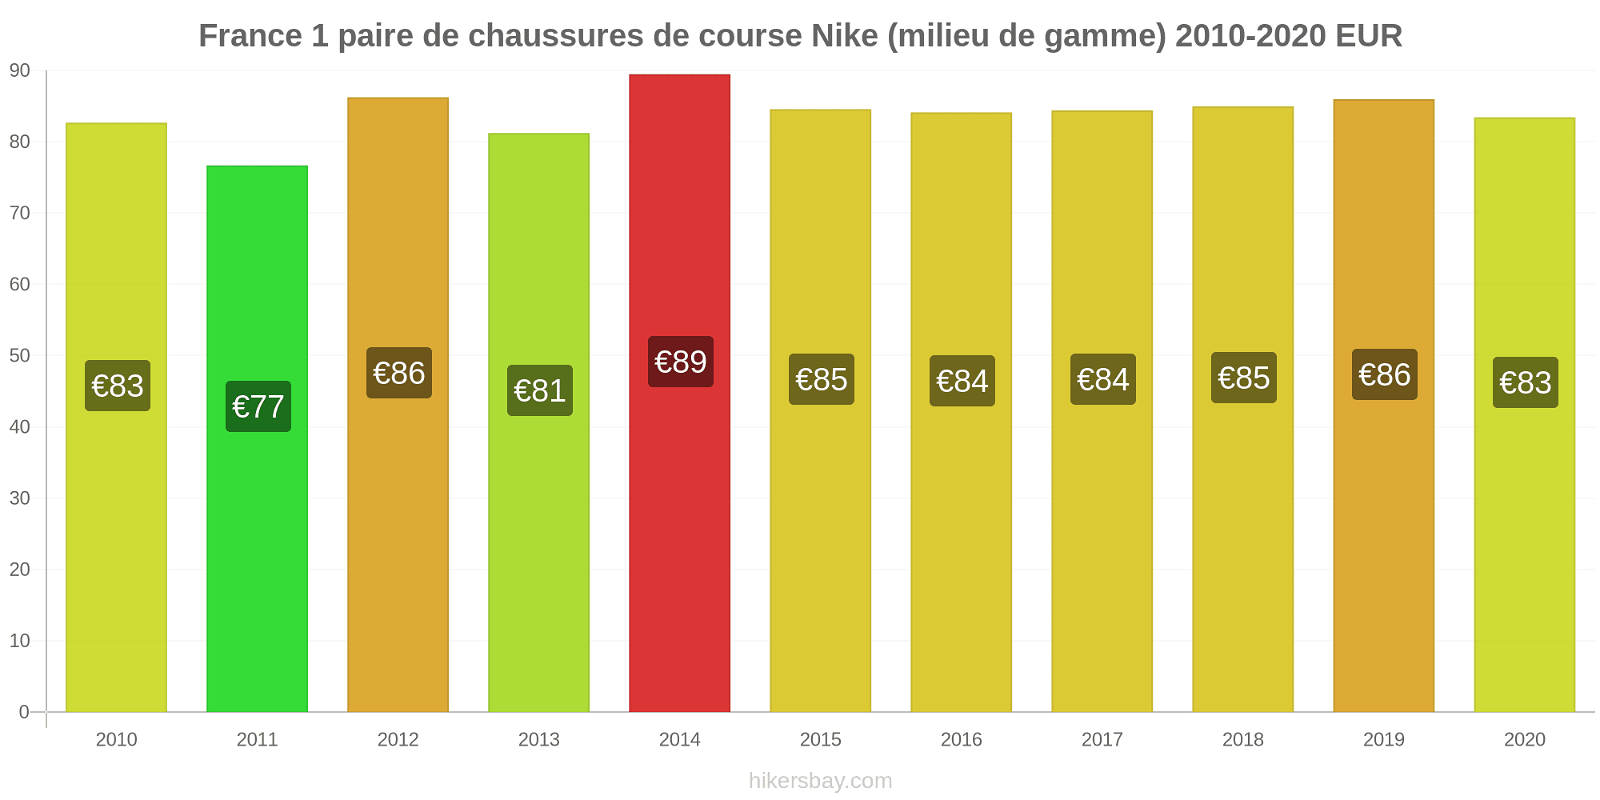 France changements de prix 1 paire de chaussures de course Nike (milieu de gamme) hikersbay.com